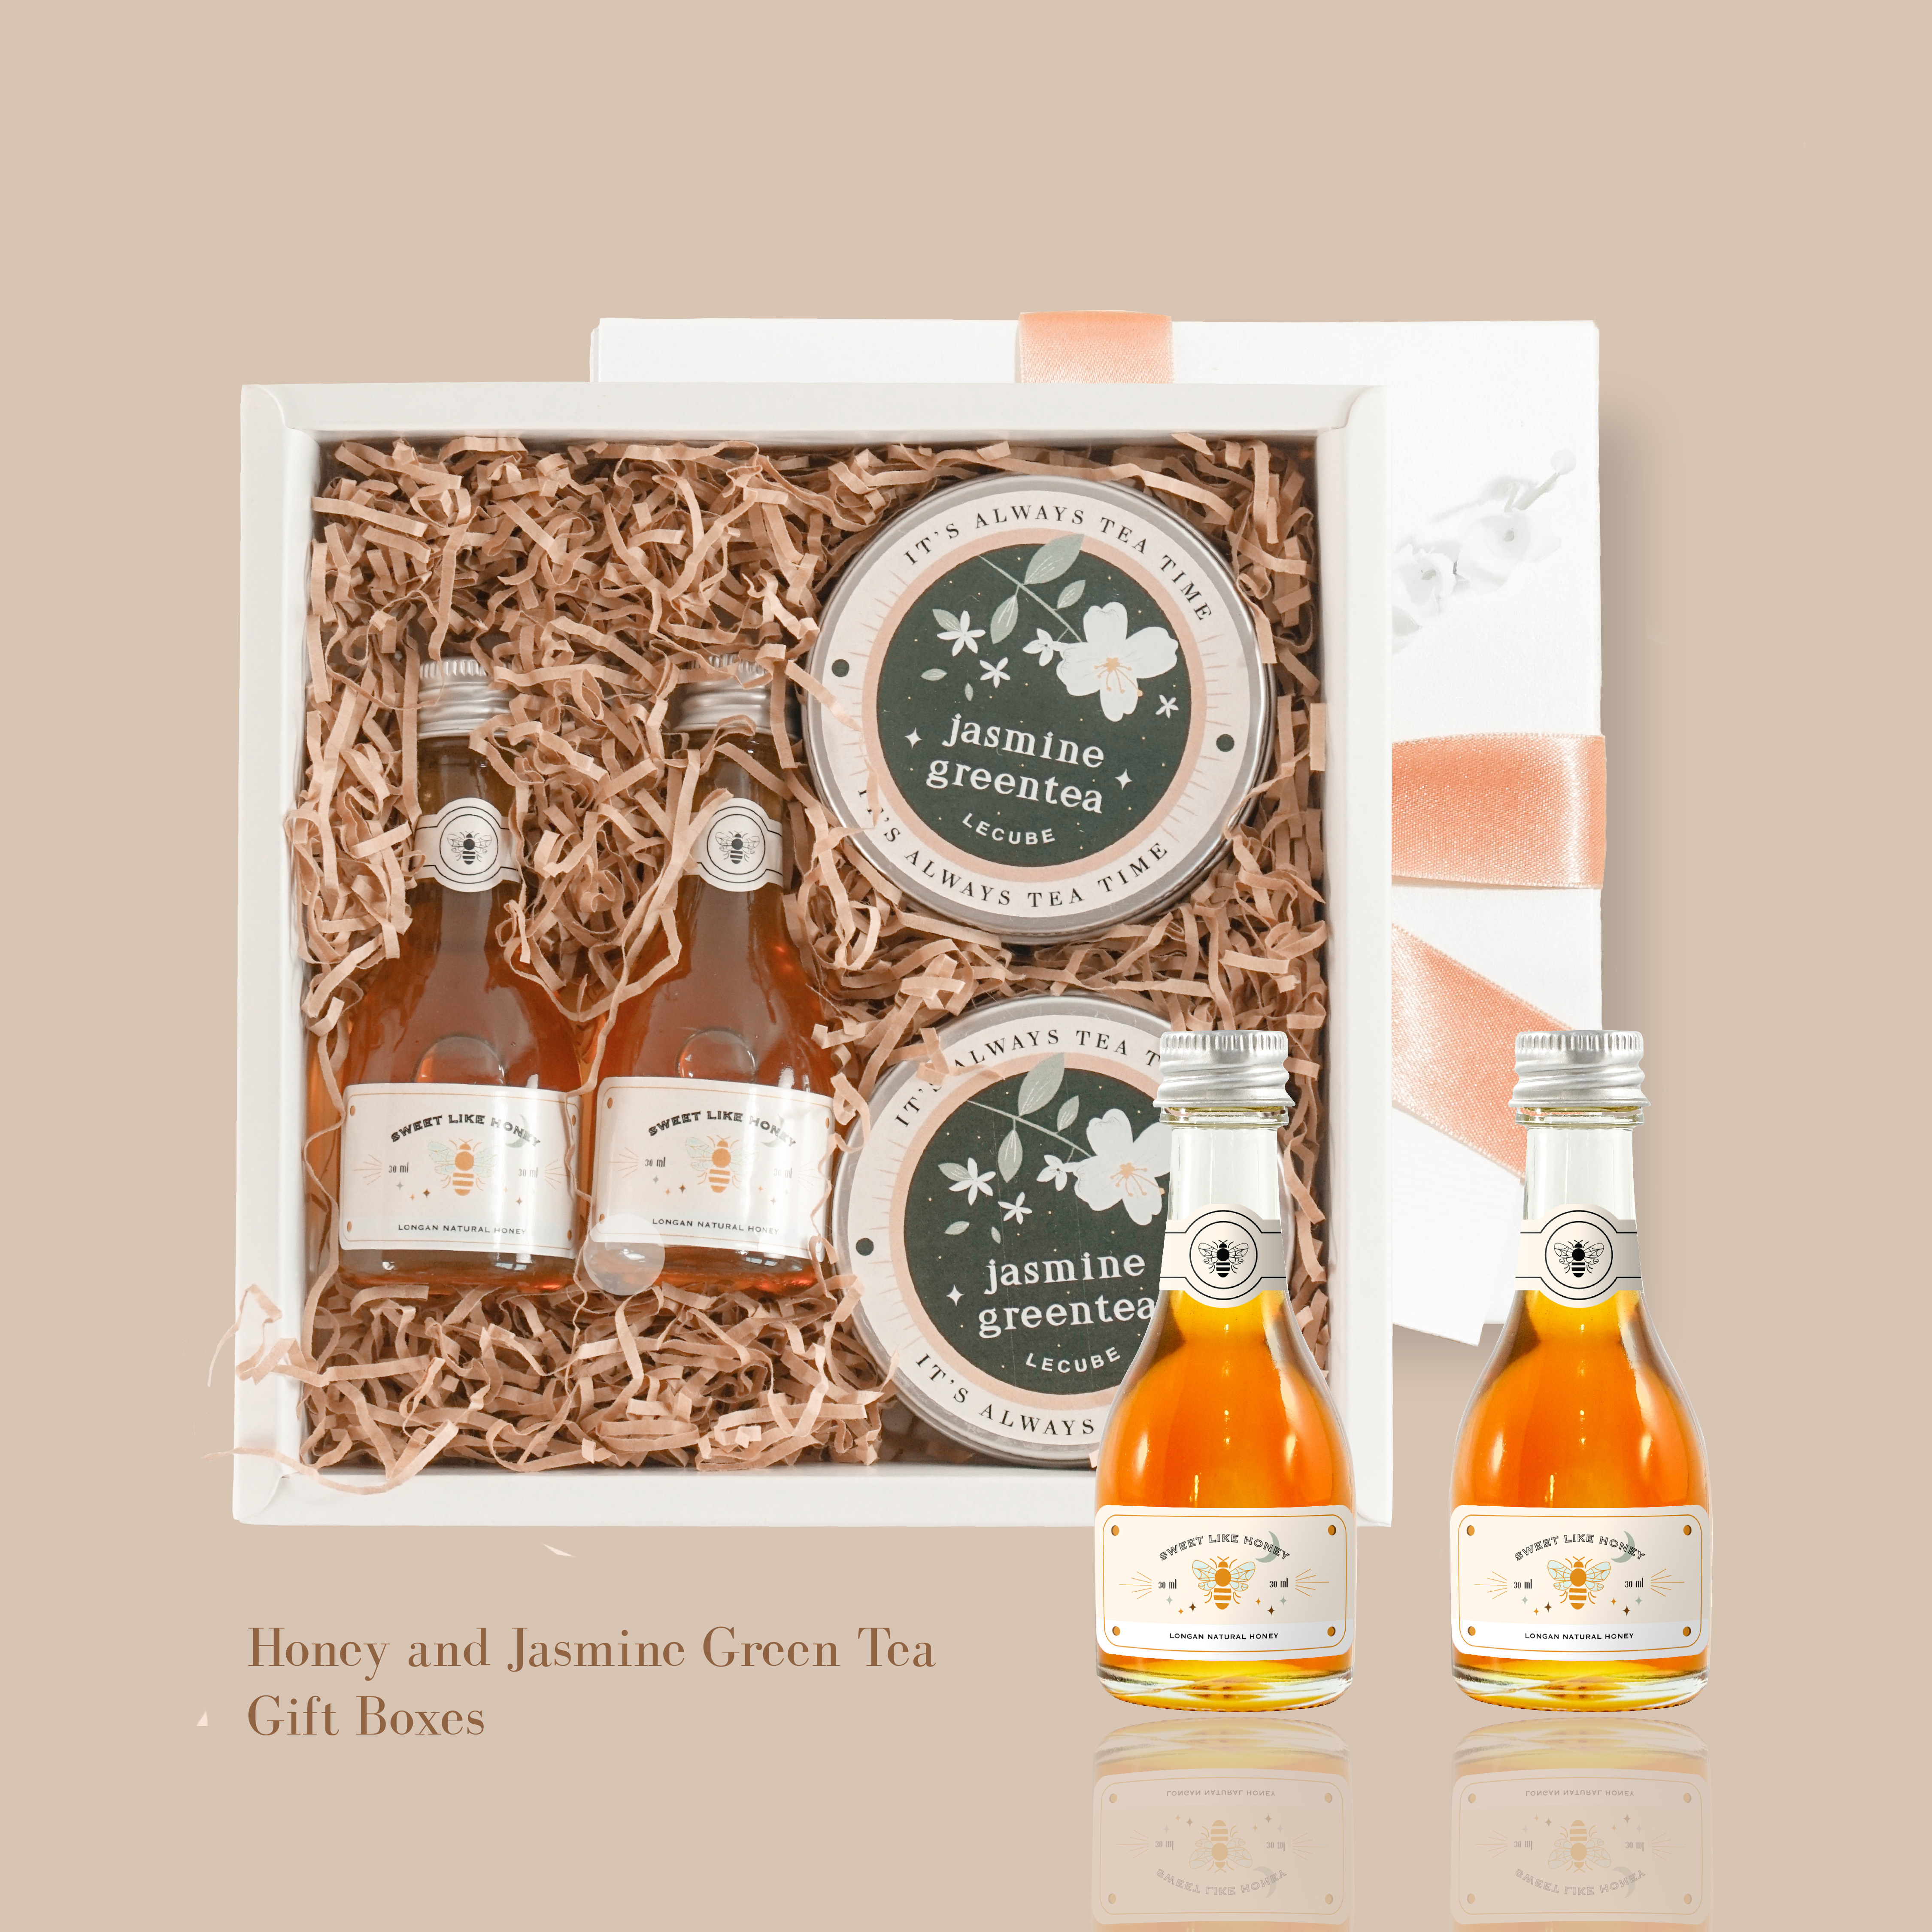 ชุดของขวัญ ของขวัญ น้ำผึ้งดอกลำไย+ชาเขียวมะลิ Premium Gift Boxes ของขวัญสำหรับเทศกาล ของขวัญปีใหม่ สี น้ำผึ้ง+ชาเขียว สี น้ำผึ้ง+ชาเขียว